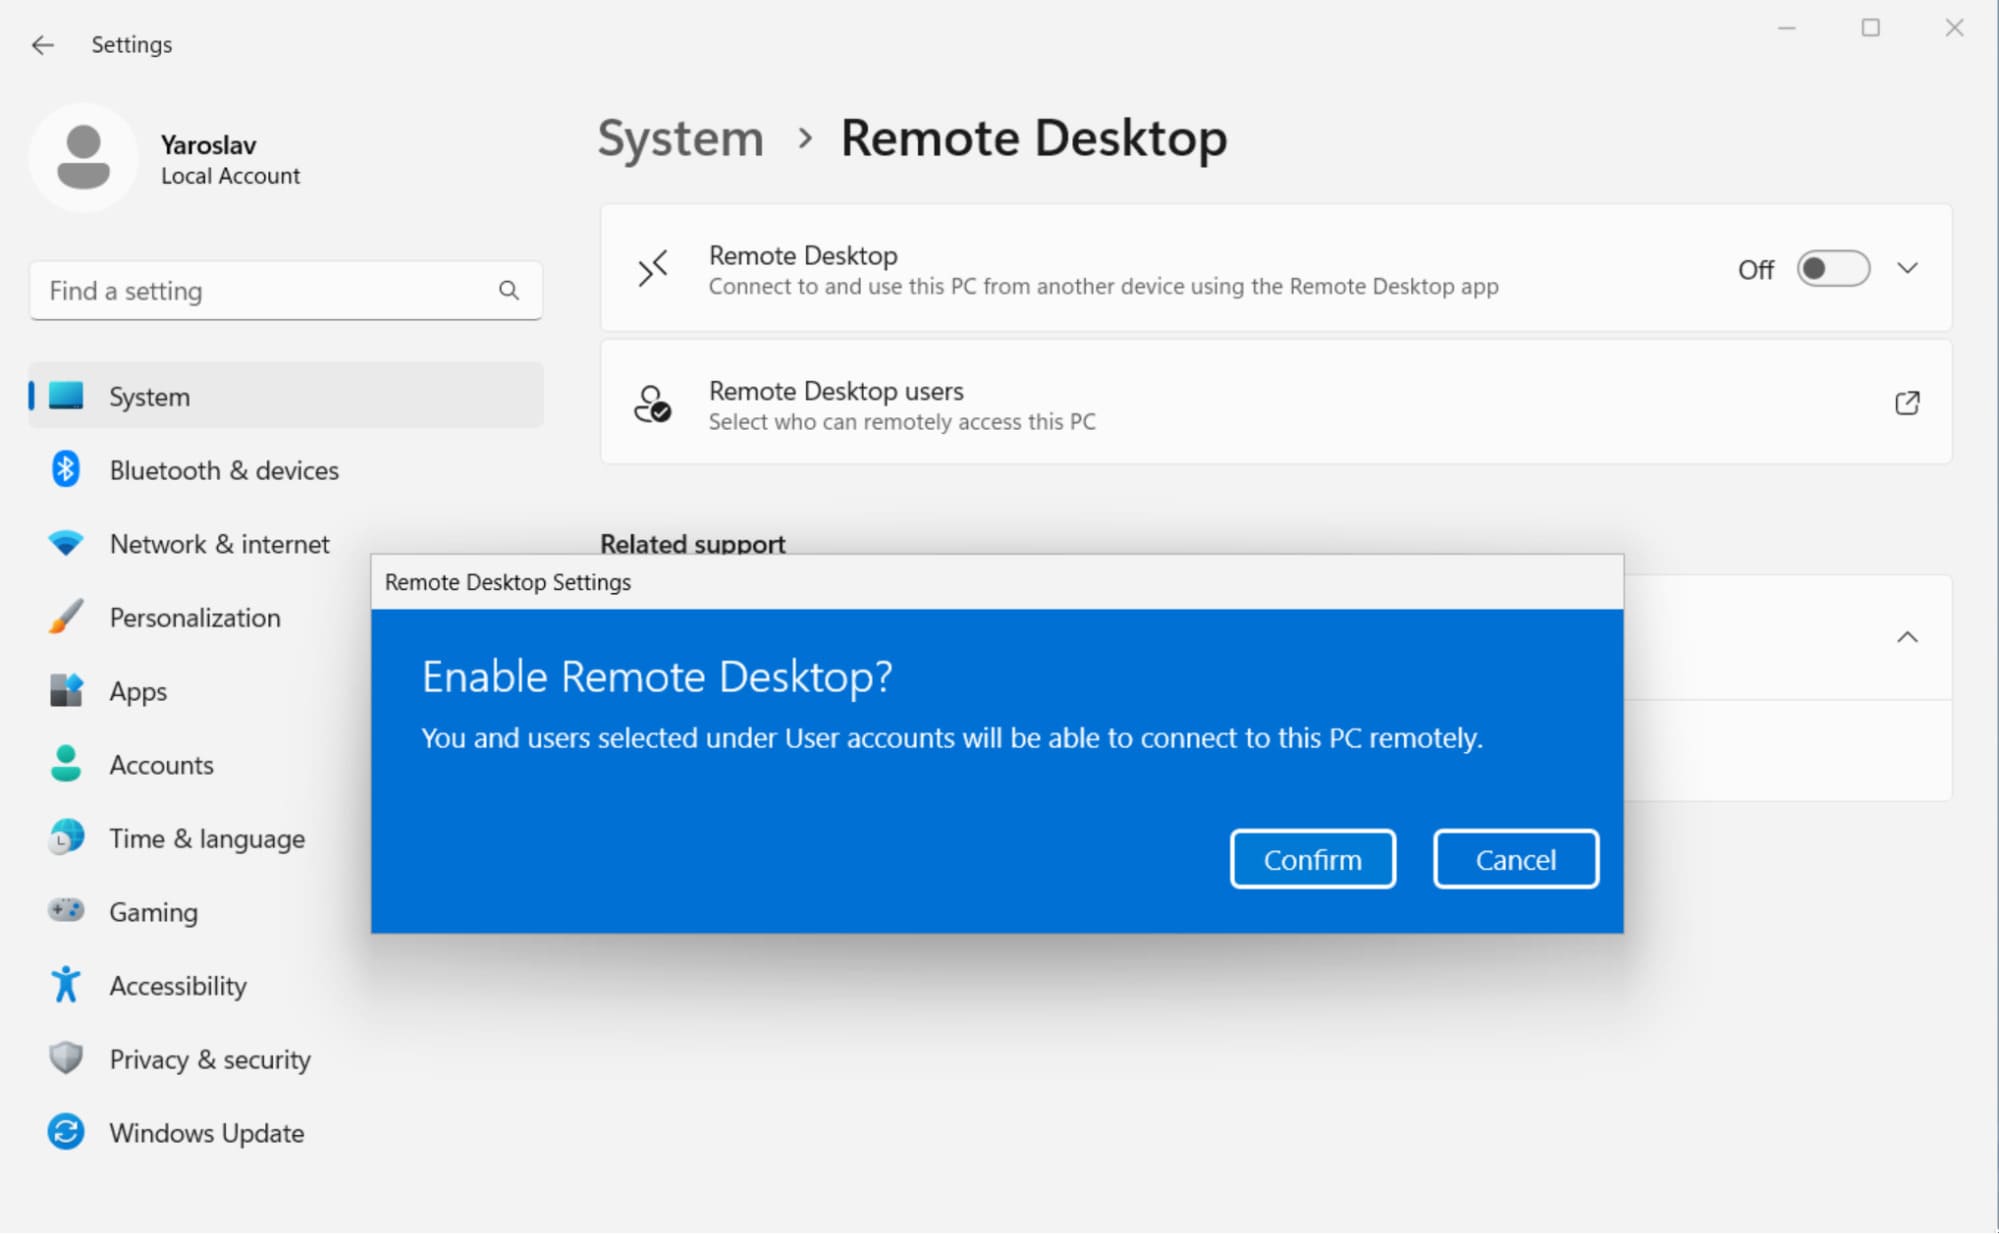 enable remote desktop confirmation windows 11